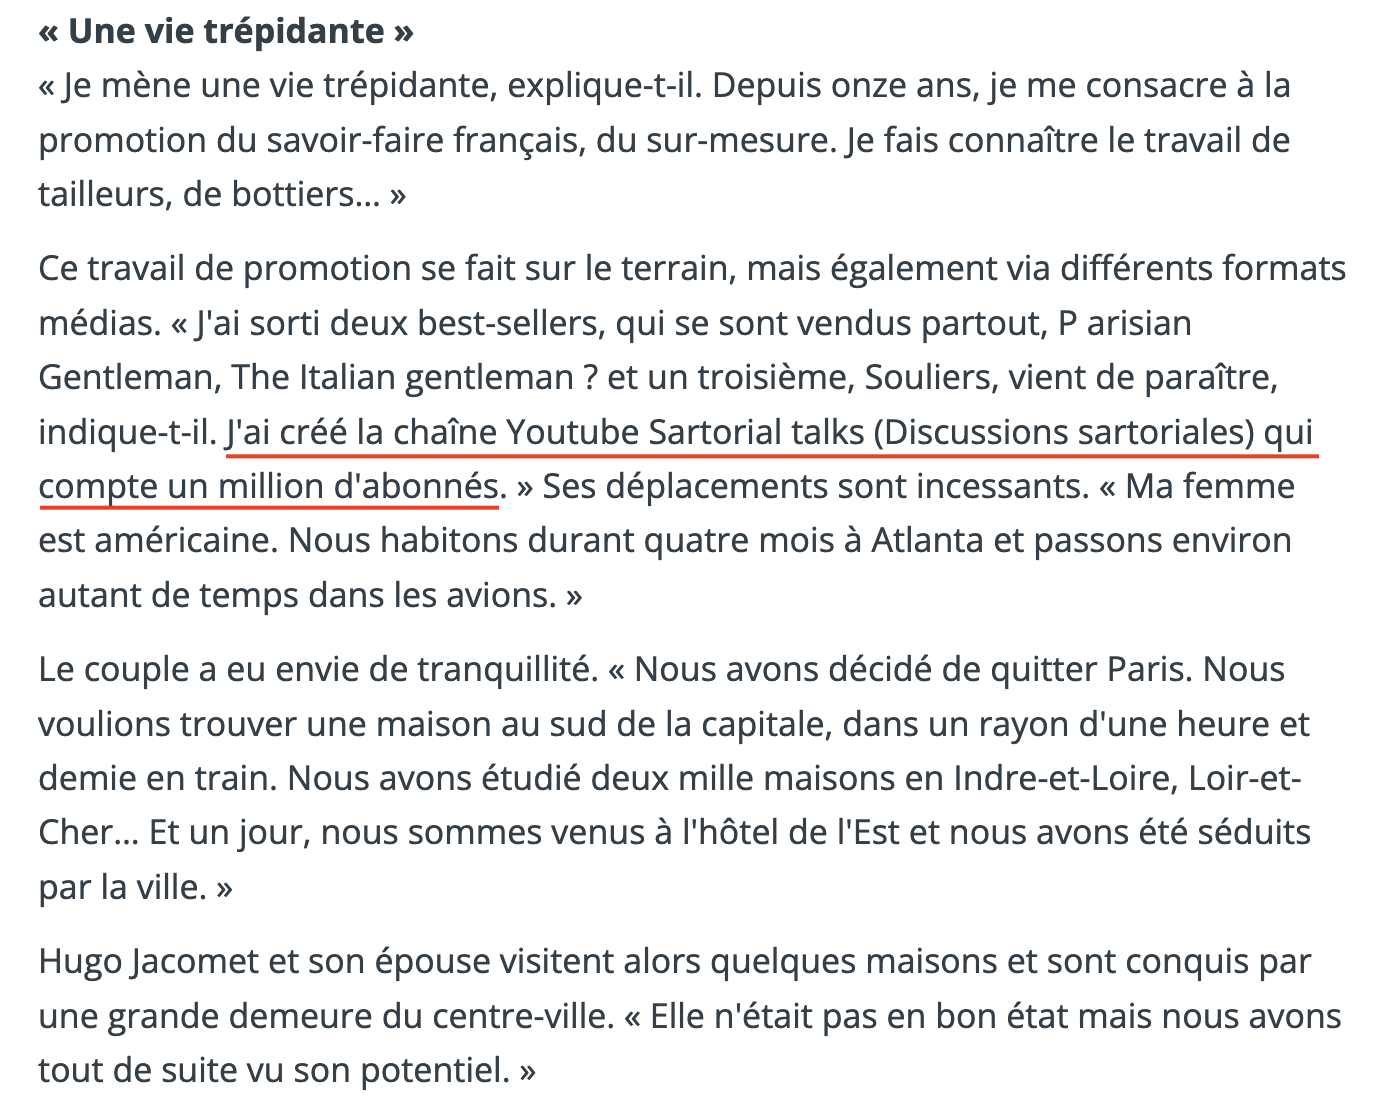 Dans l’Yonne républicaine Hugo Jacomet annonce fièrement que sa chaîne Youtube Sartorial talks compte un million d’abonnés.  <a href="https://www.lyonne.fr/saint-florentin-89600/actualites/hugo-jacomet-a-quitte-paris-pour-la-tranquillite_13746074/#refresh"> Lien vers l'article. </a> 
(Source : lyonnerépublicaine)